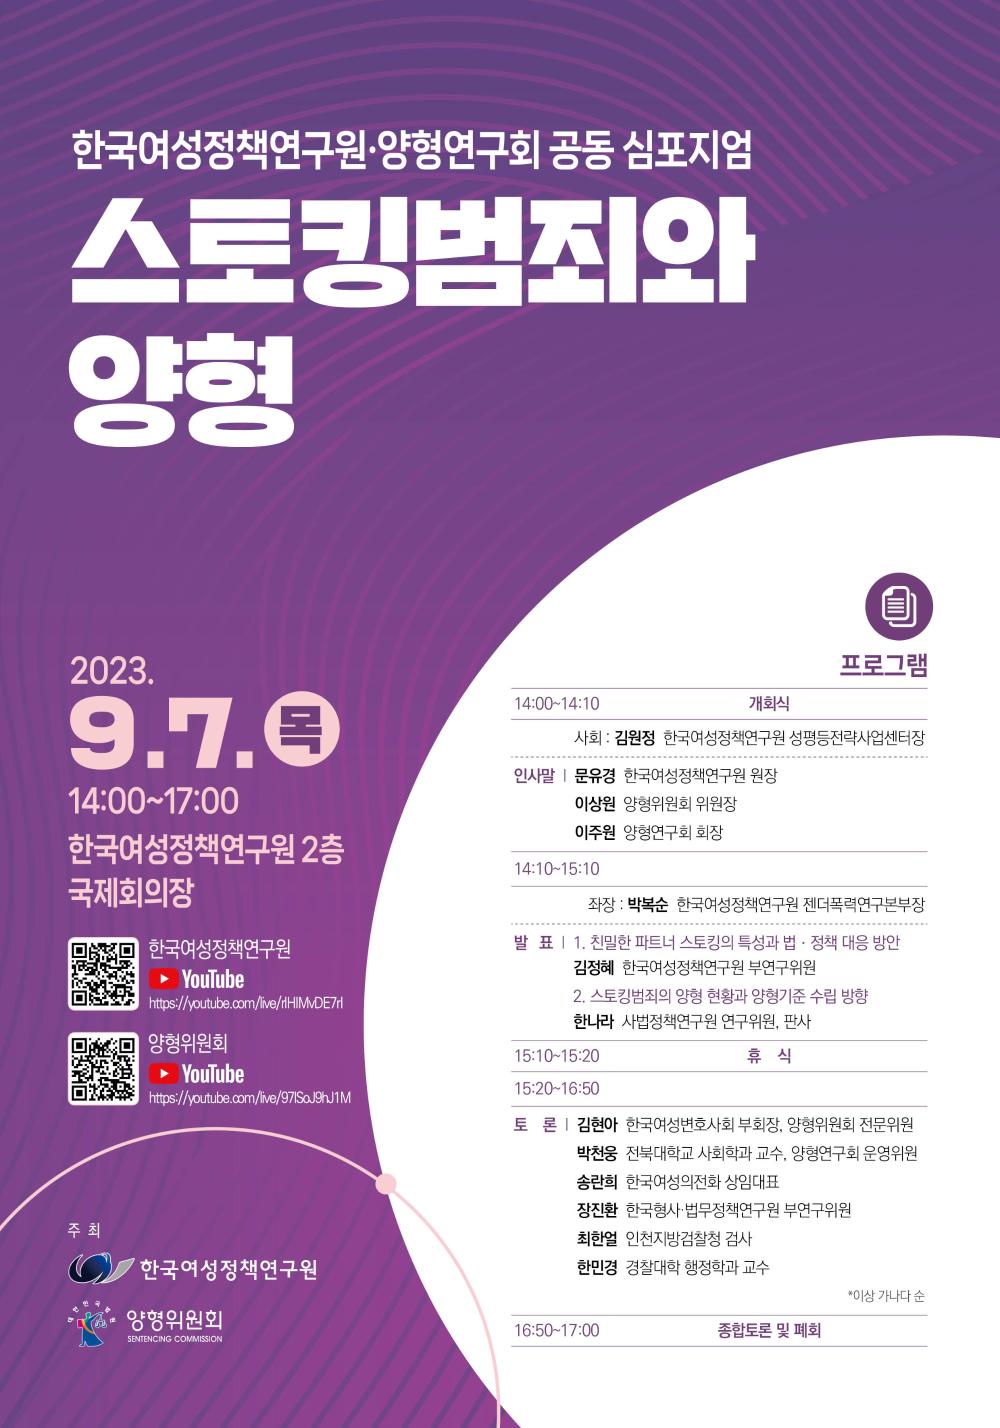 한국여성정책연구원ㆍ양형연구회 공동 심포지엄: 스토킹범죄와 양형